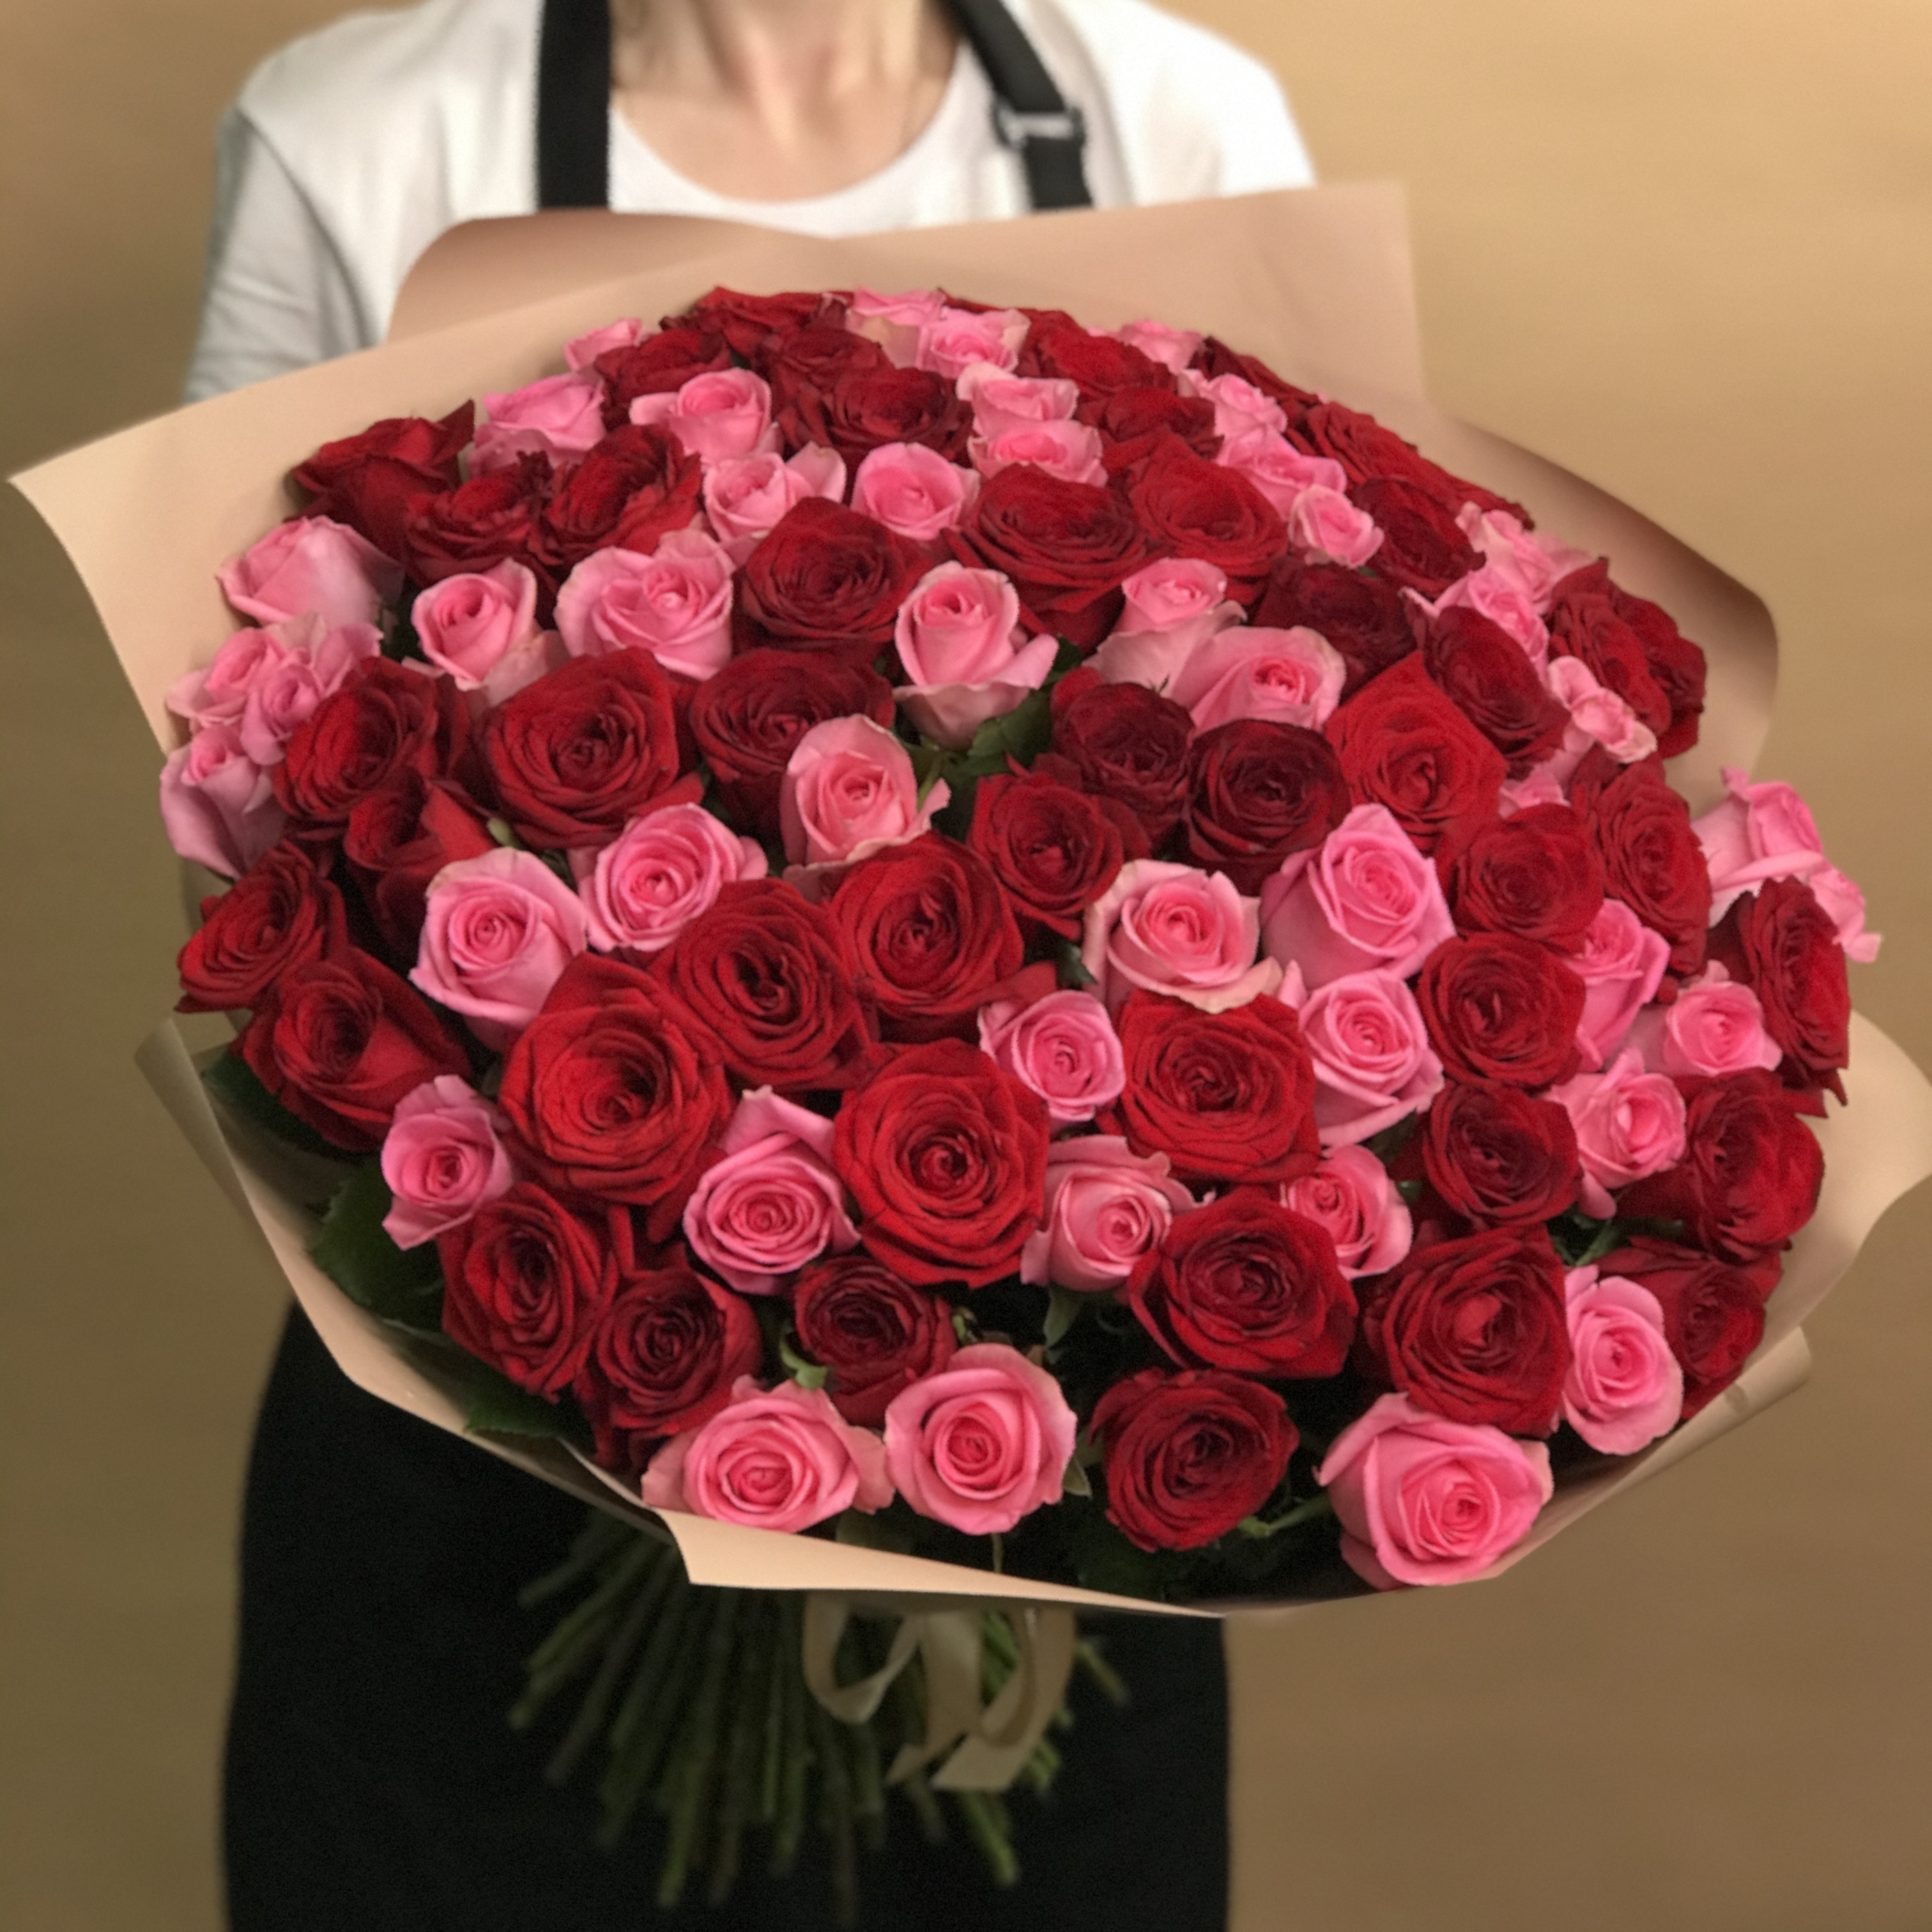 букет из красных и розовых роз 25 шт 60 см Букет из красных и розовых роз 101 шт. (60 см)